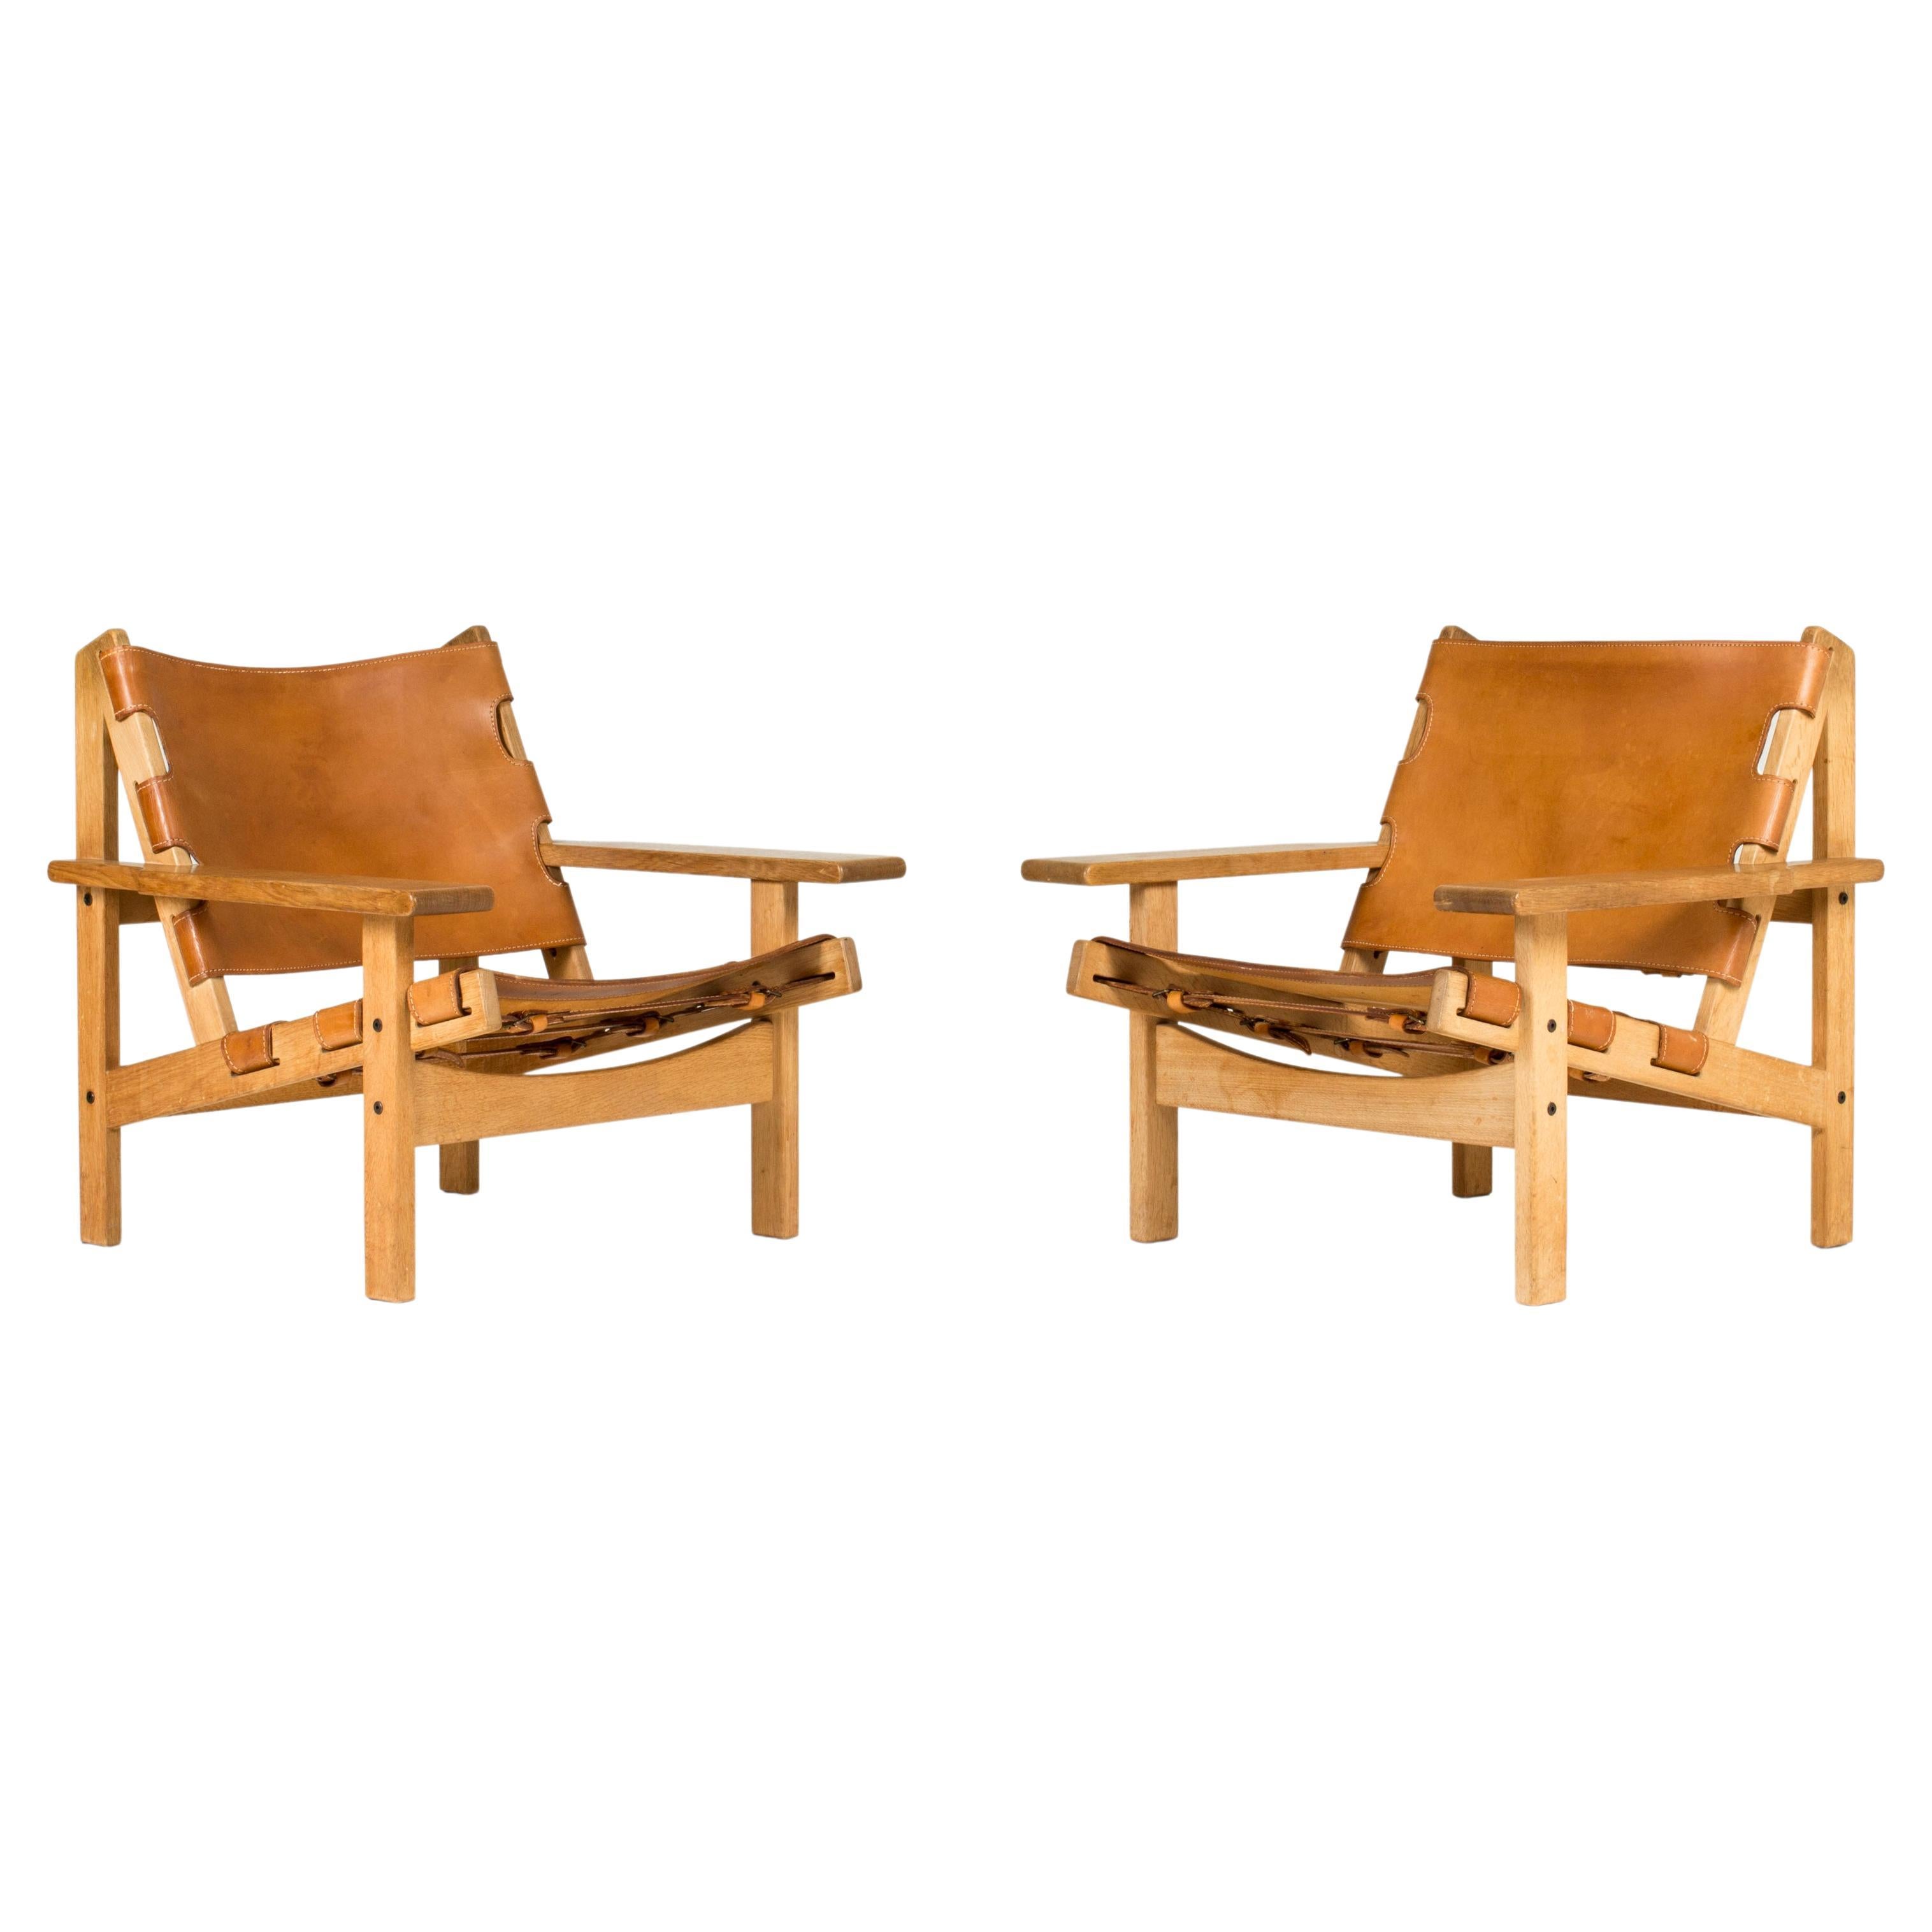 Scandinavian Modern Lounge Chairs by Kurt Østervig, KP Møbler, Denmark, 1960s For Sale